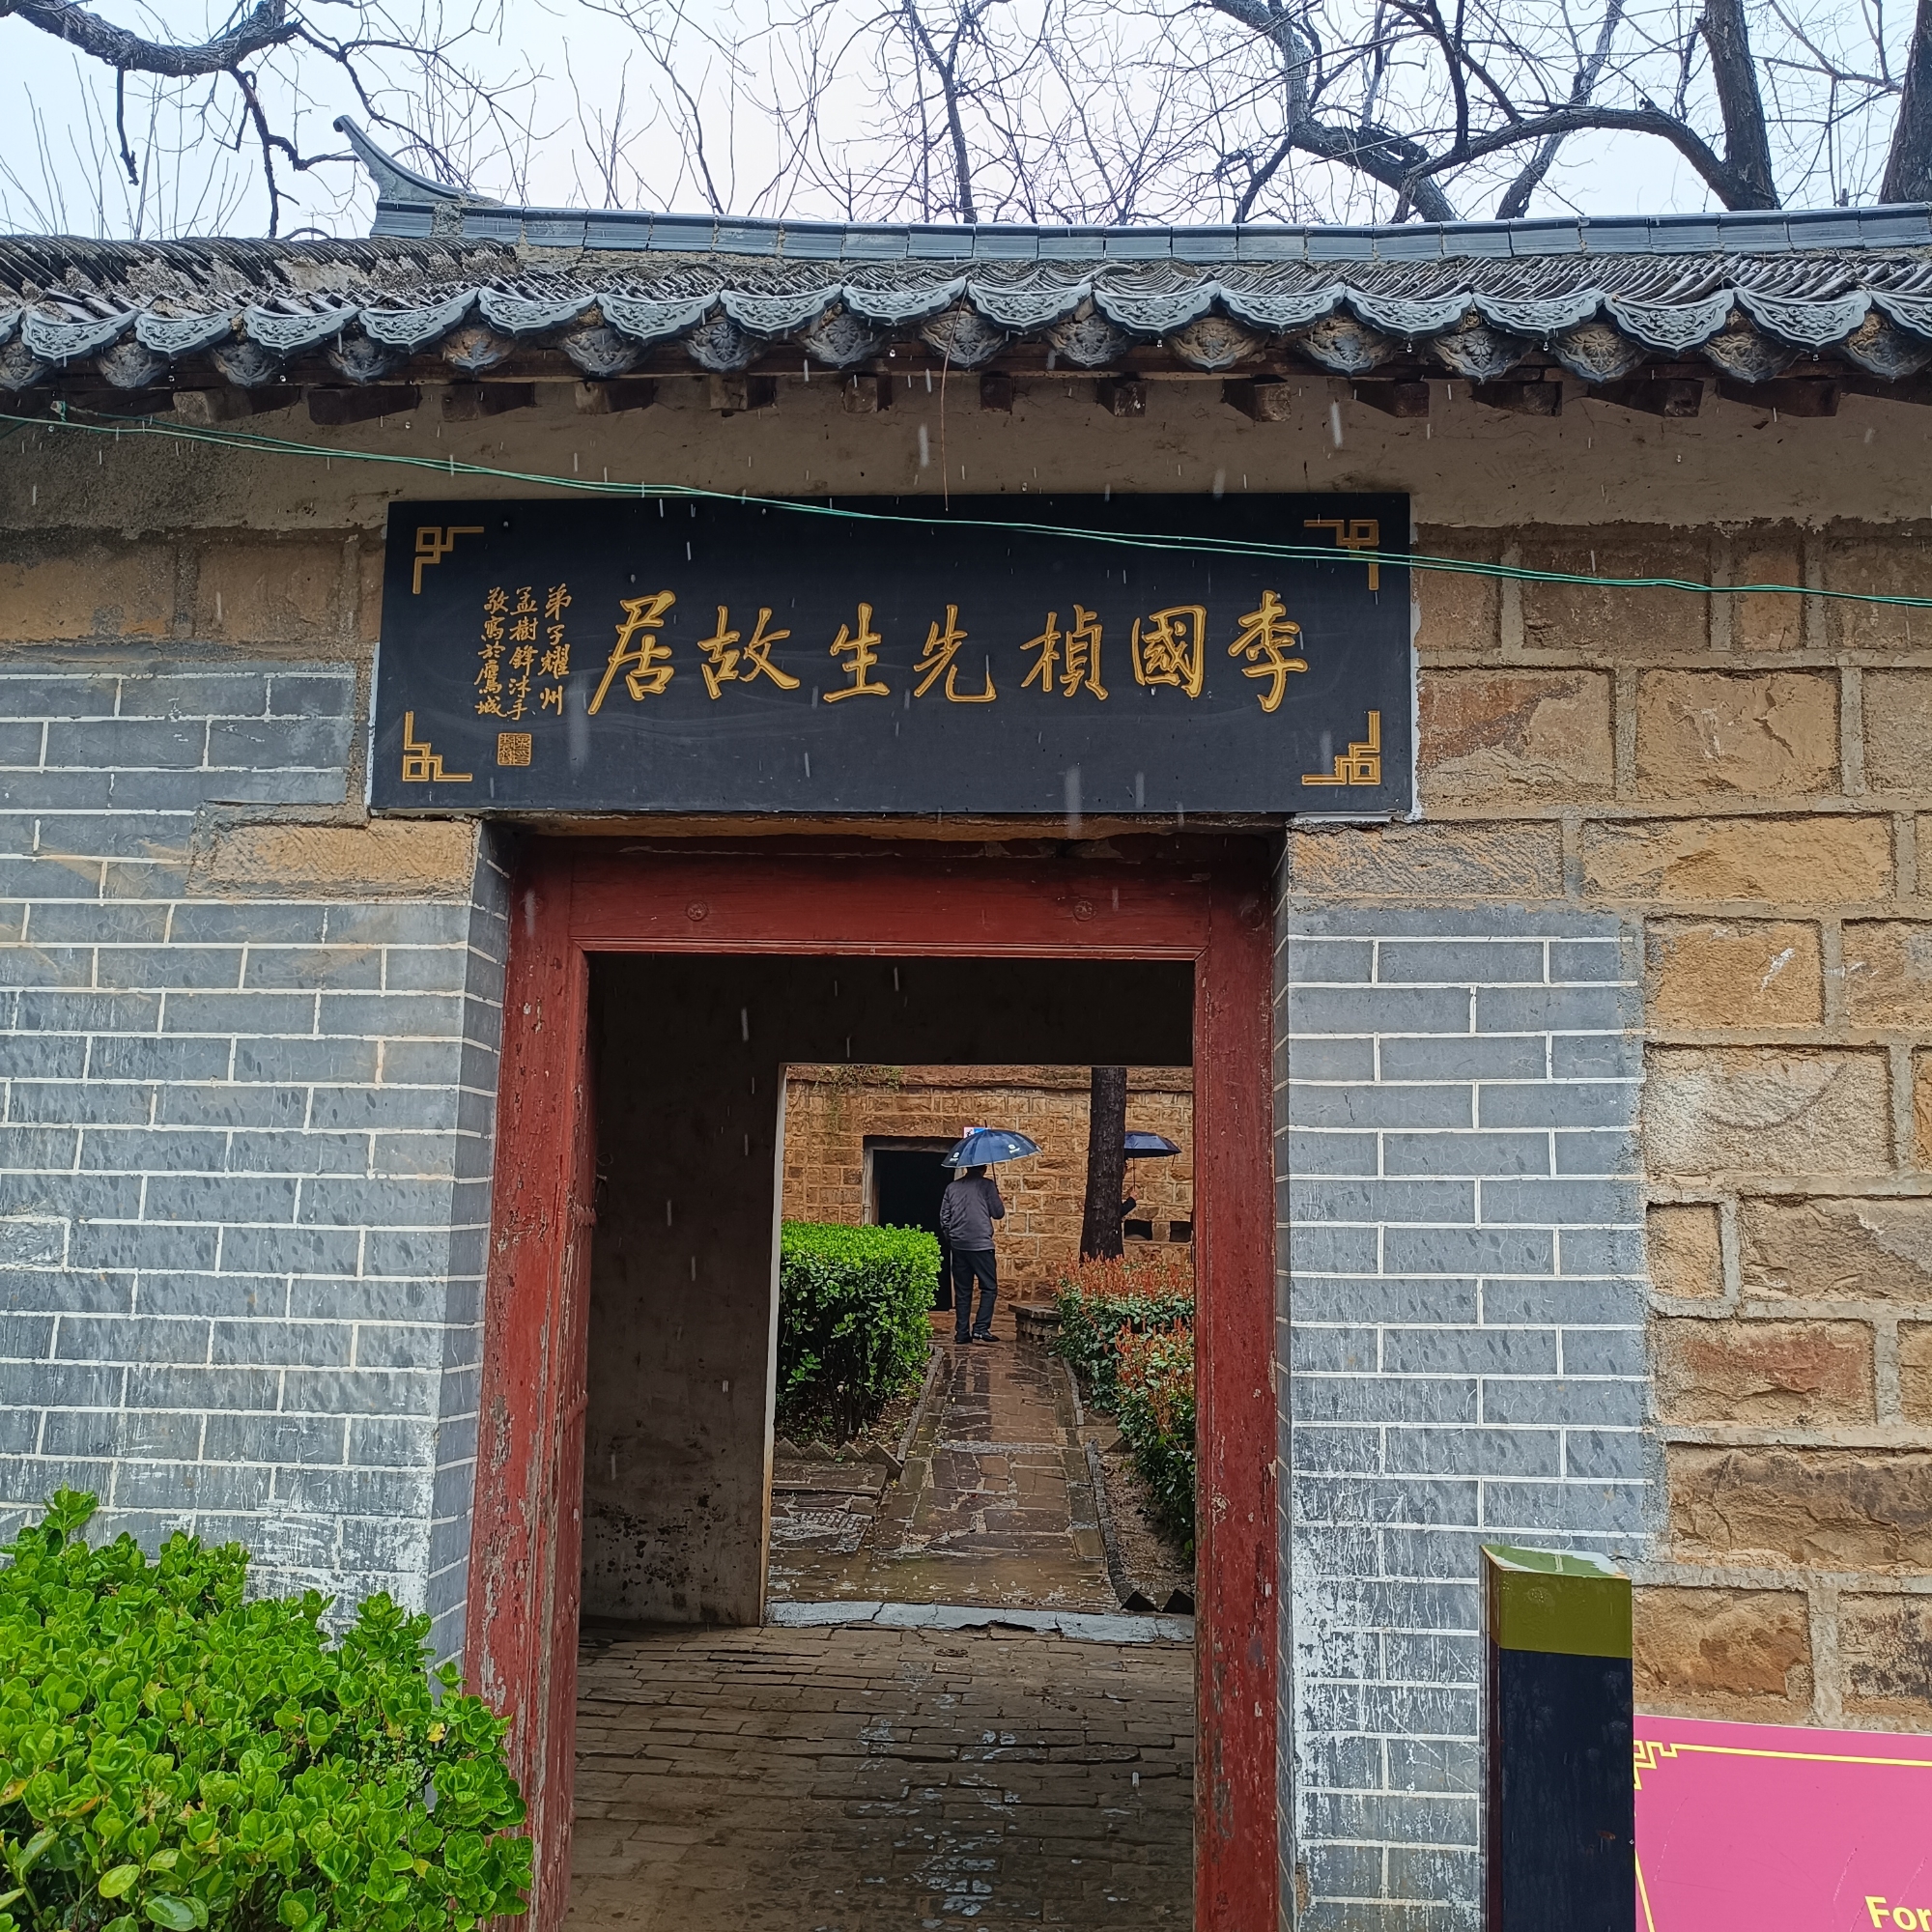 陶瓷大师--李国桢，河南郏县曹沟村人，故居目前位于豫西抗战根据地景区里面，进门后主居为几间窑洞。其病